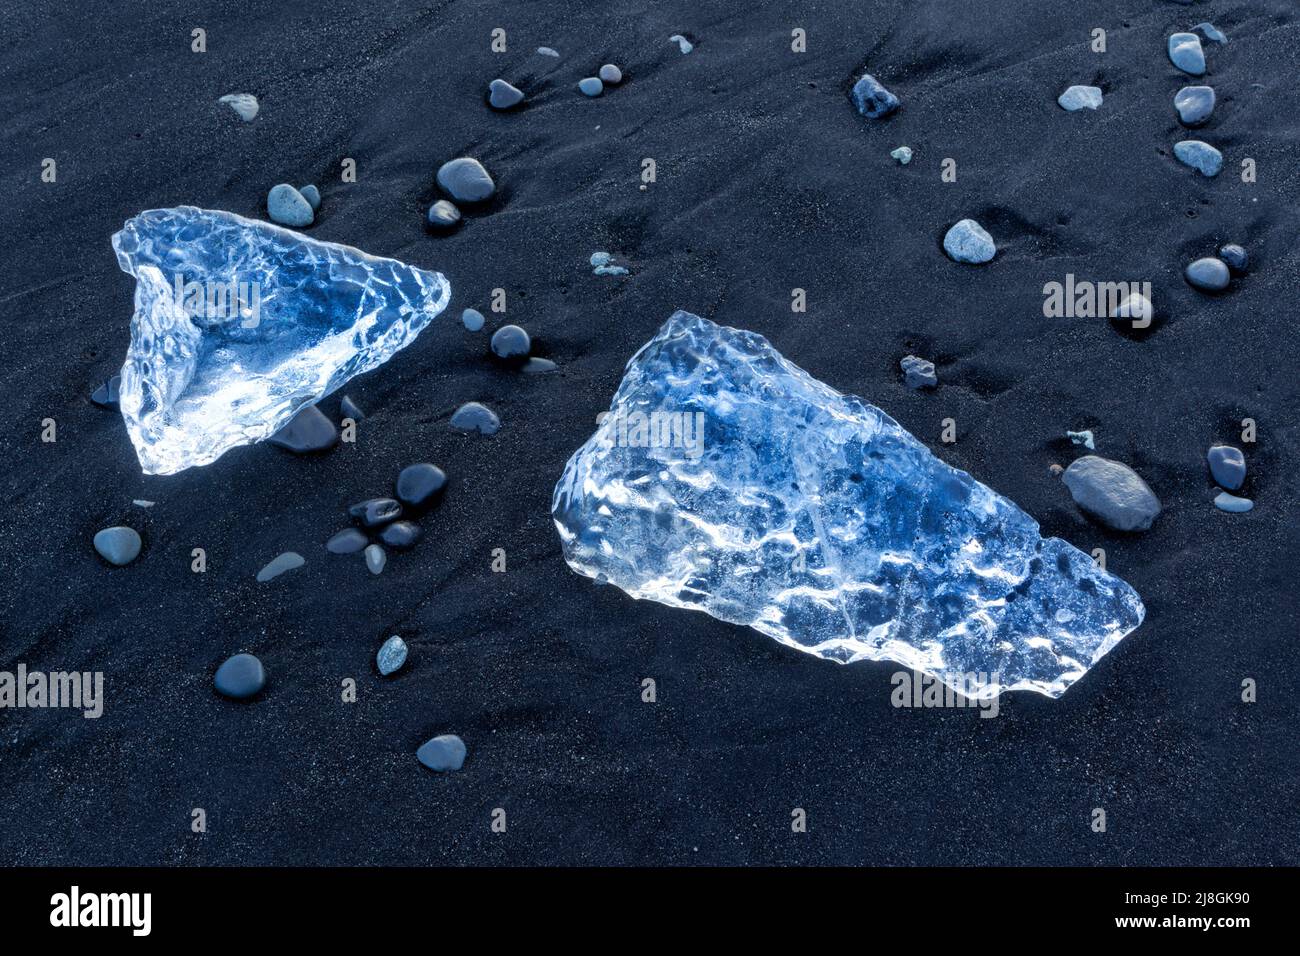 Frammenti di iceberg si sono lavati sulla spiaggia di Jökulsarlön, dove gli iceberg fluiscono dalla laguna di Jökulsarlön in Islanda. A volte chiamata spiaggia di diamante. Foto Stock